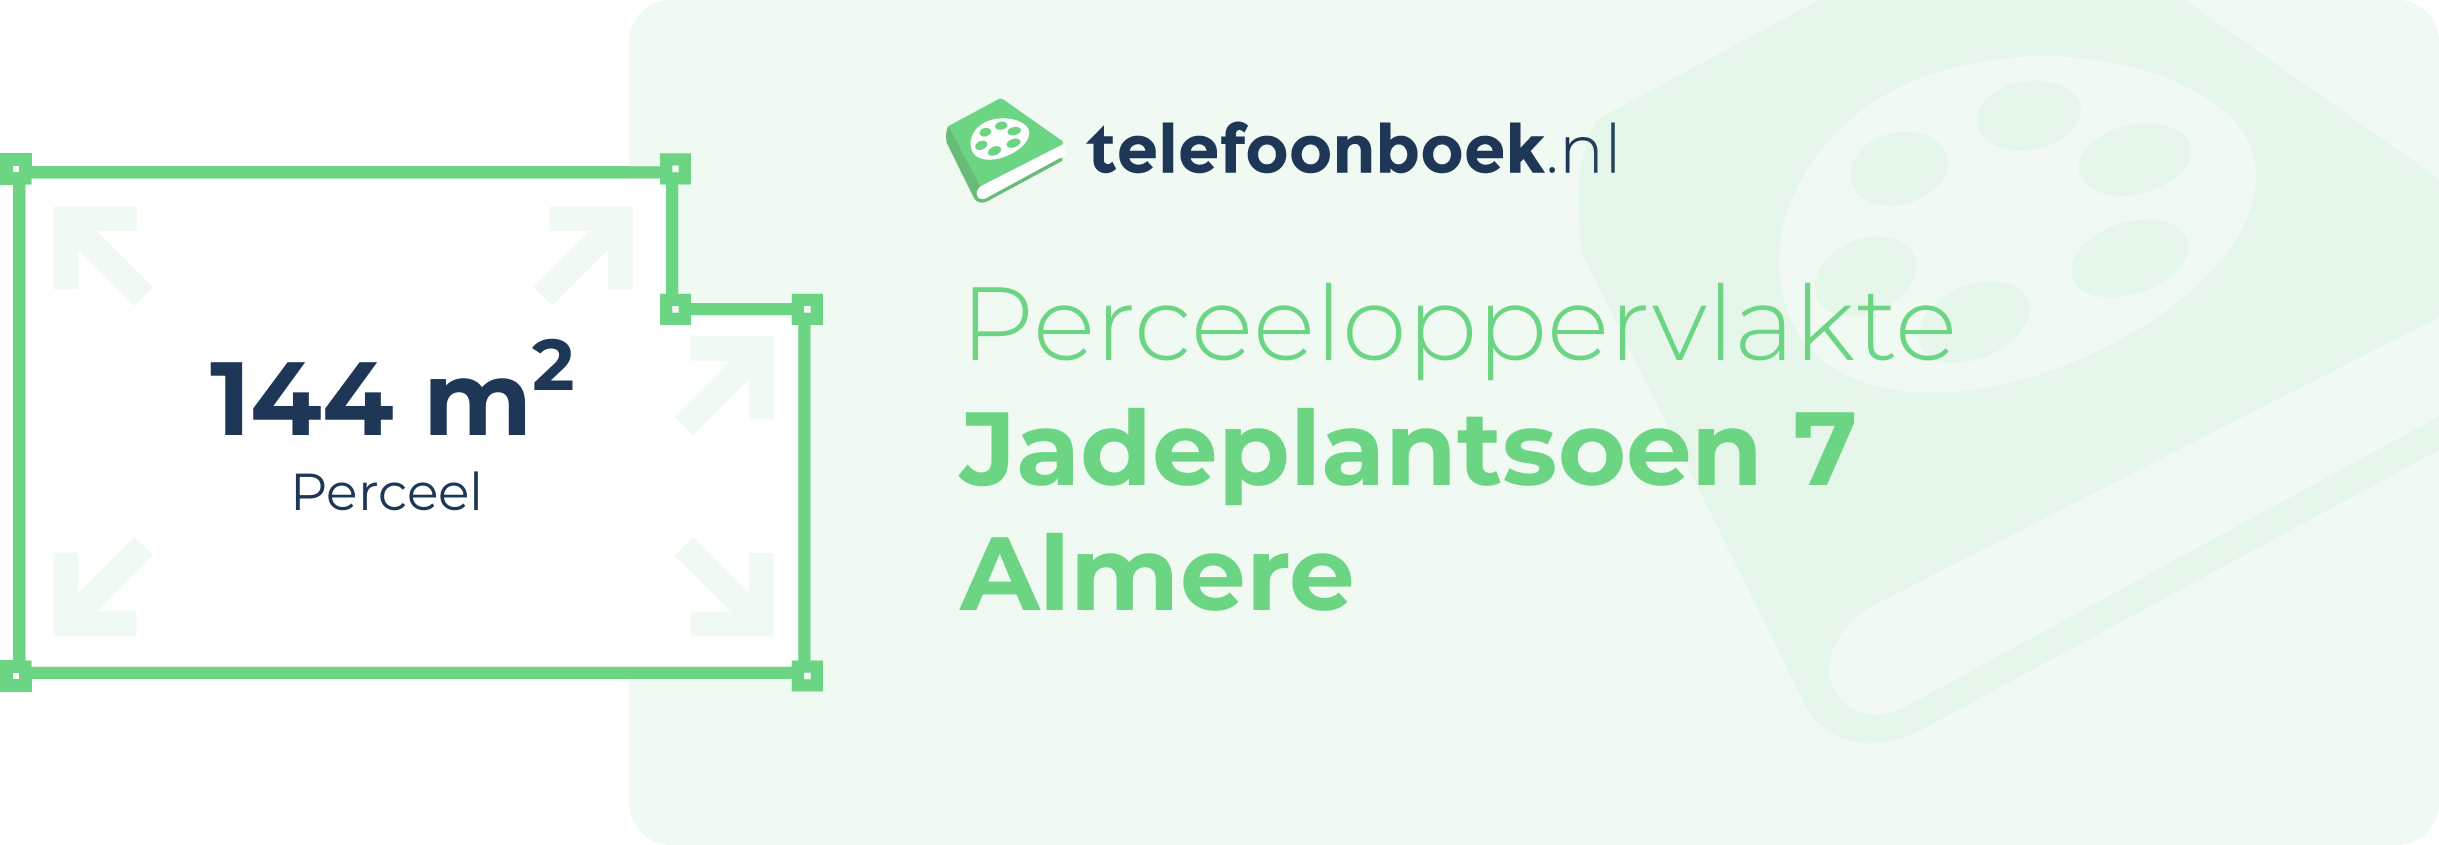 Perceeloppervlakte Jadeplantsoen 7 Almere